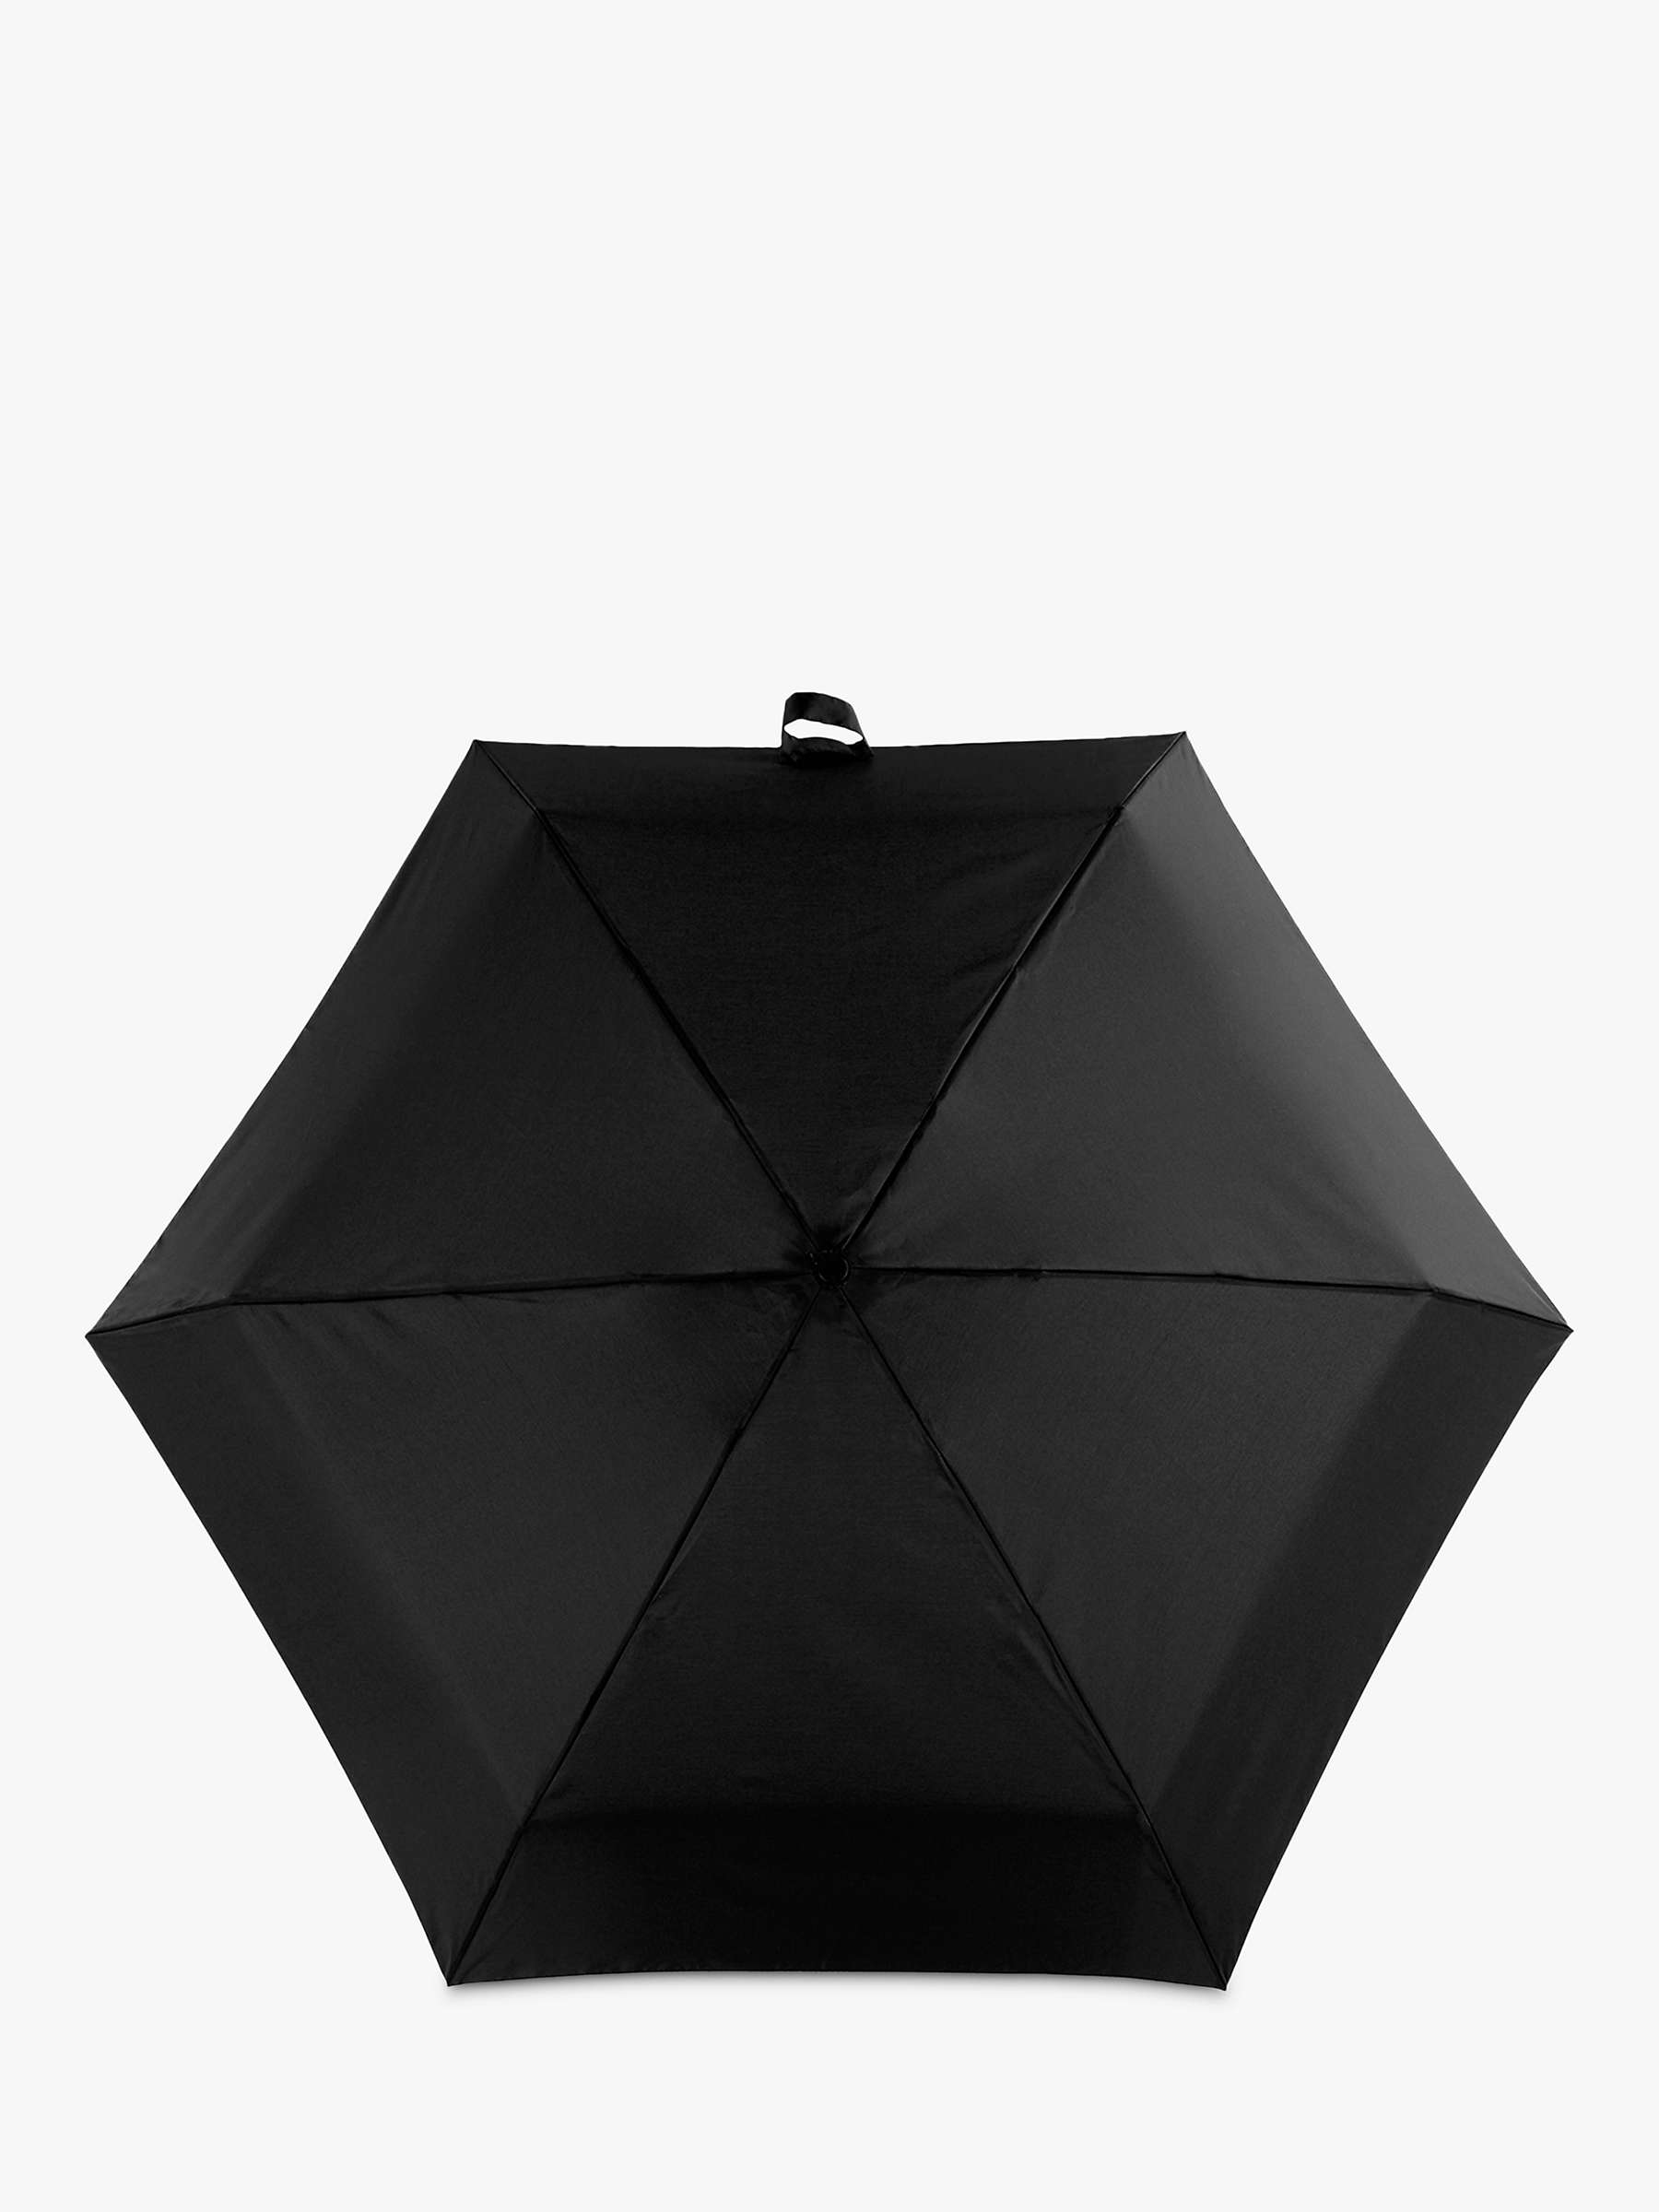 Buy totes Supermini Umbrella, Black Online at johnlewis.com